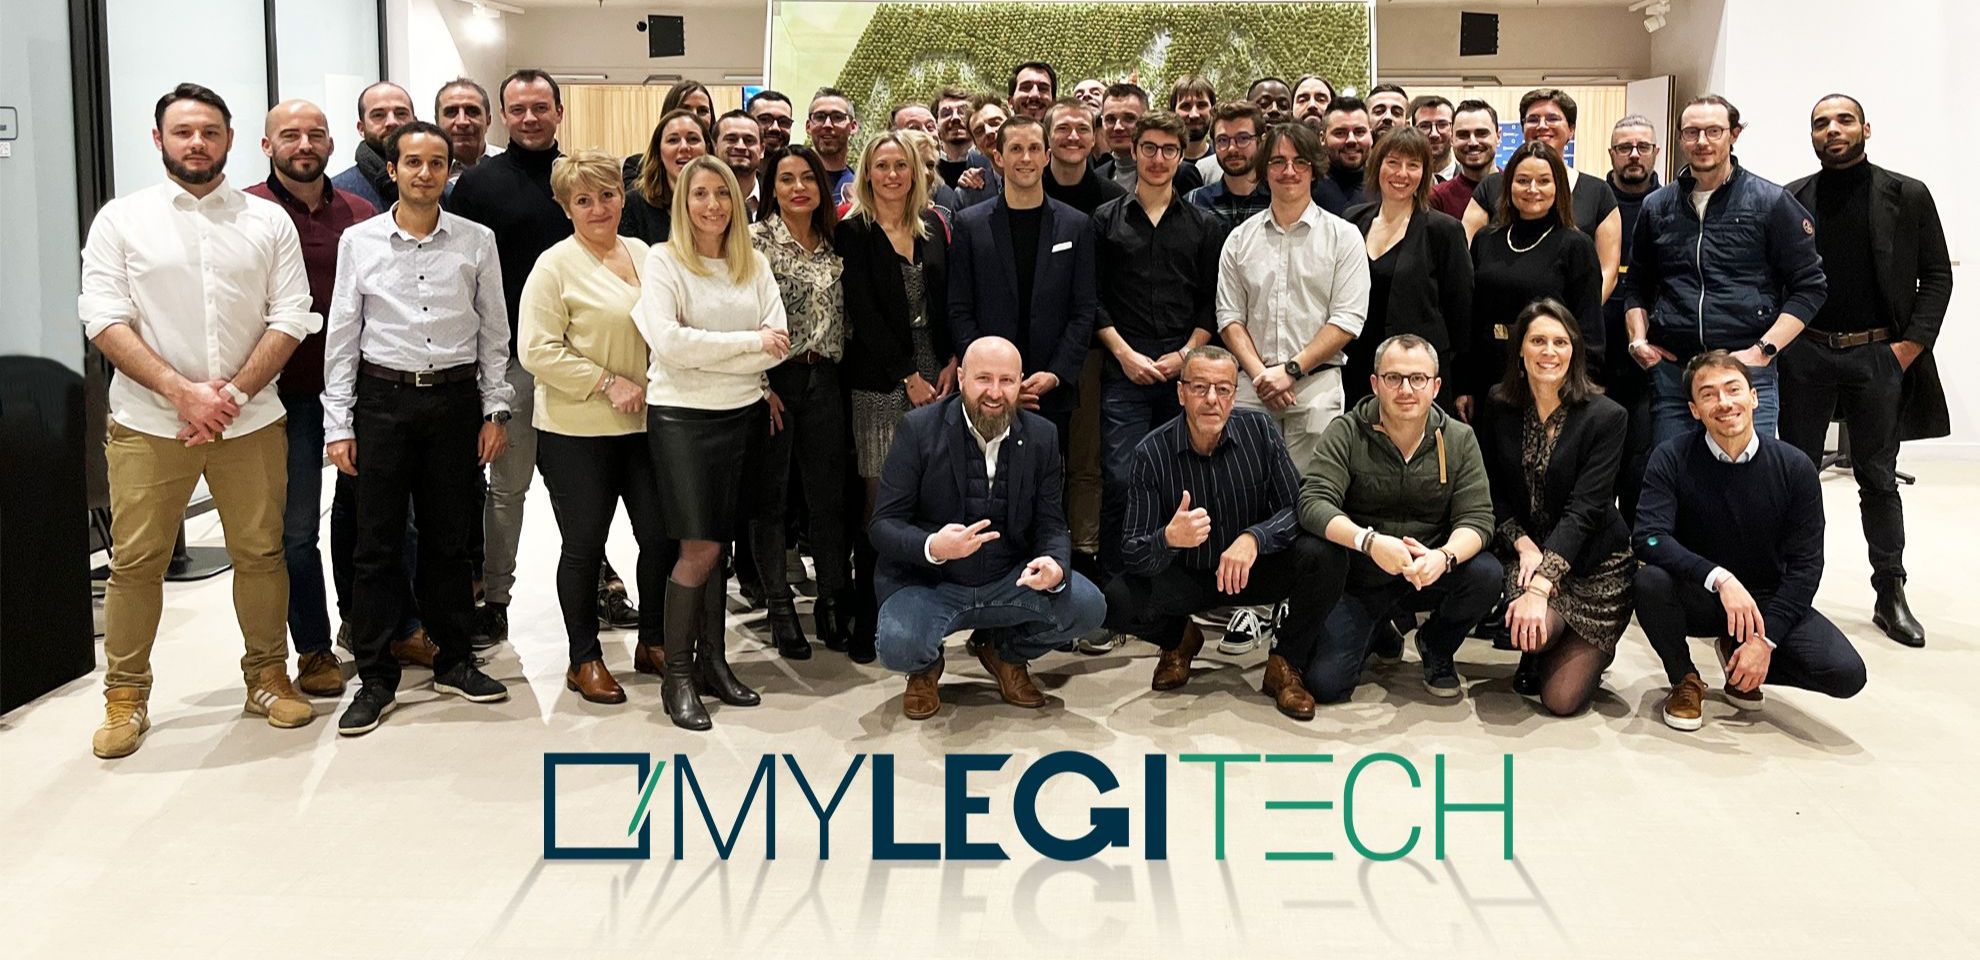 L'équipe MyLegiTech